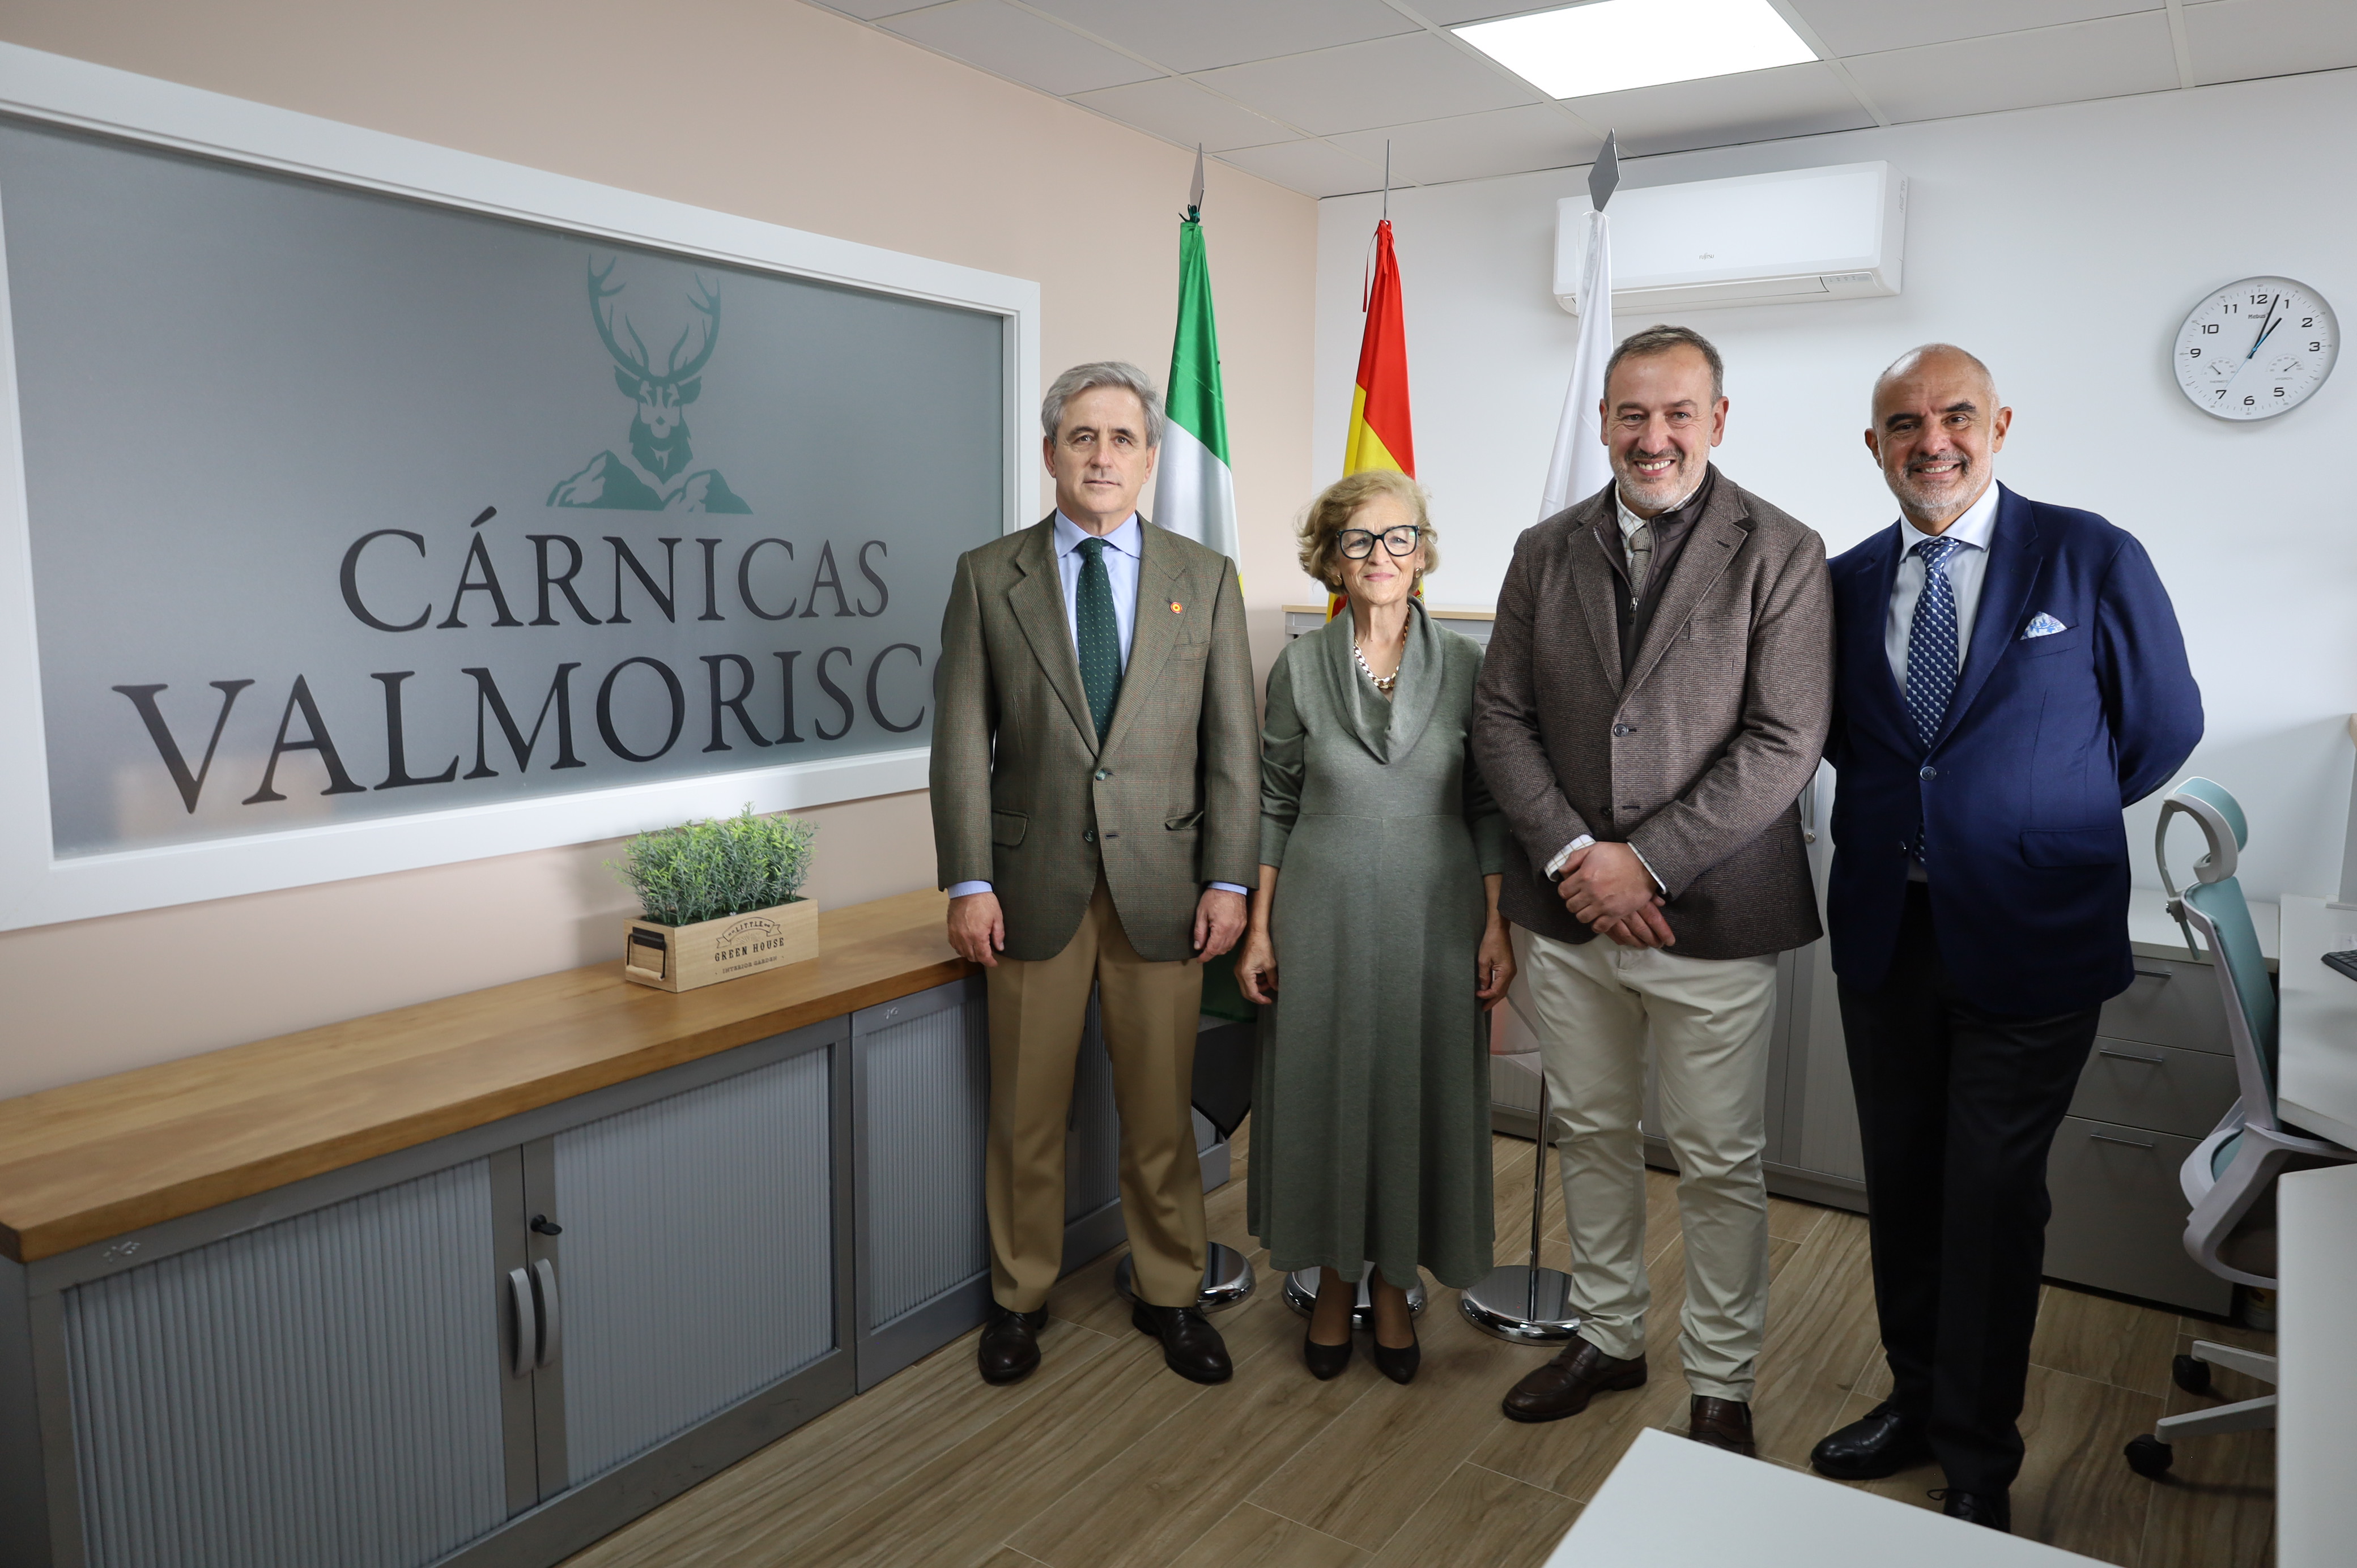 Image 3 of article El consejero de Gestión Forestal y Mundo Rural inaugura la empresa Cárnicas Valmorisco en Alía